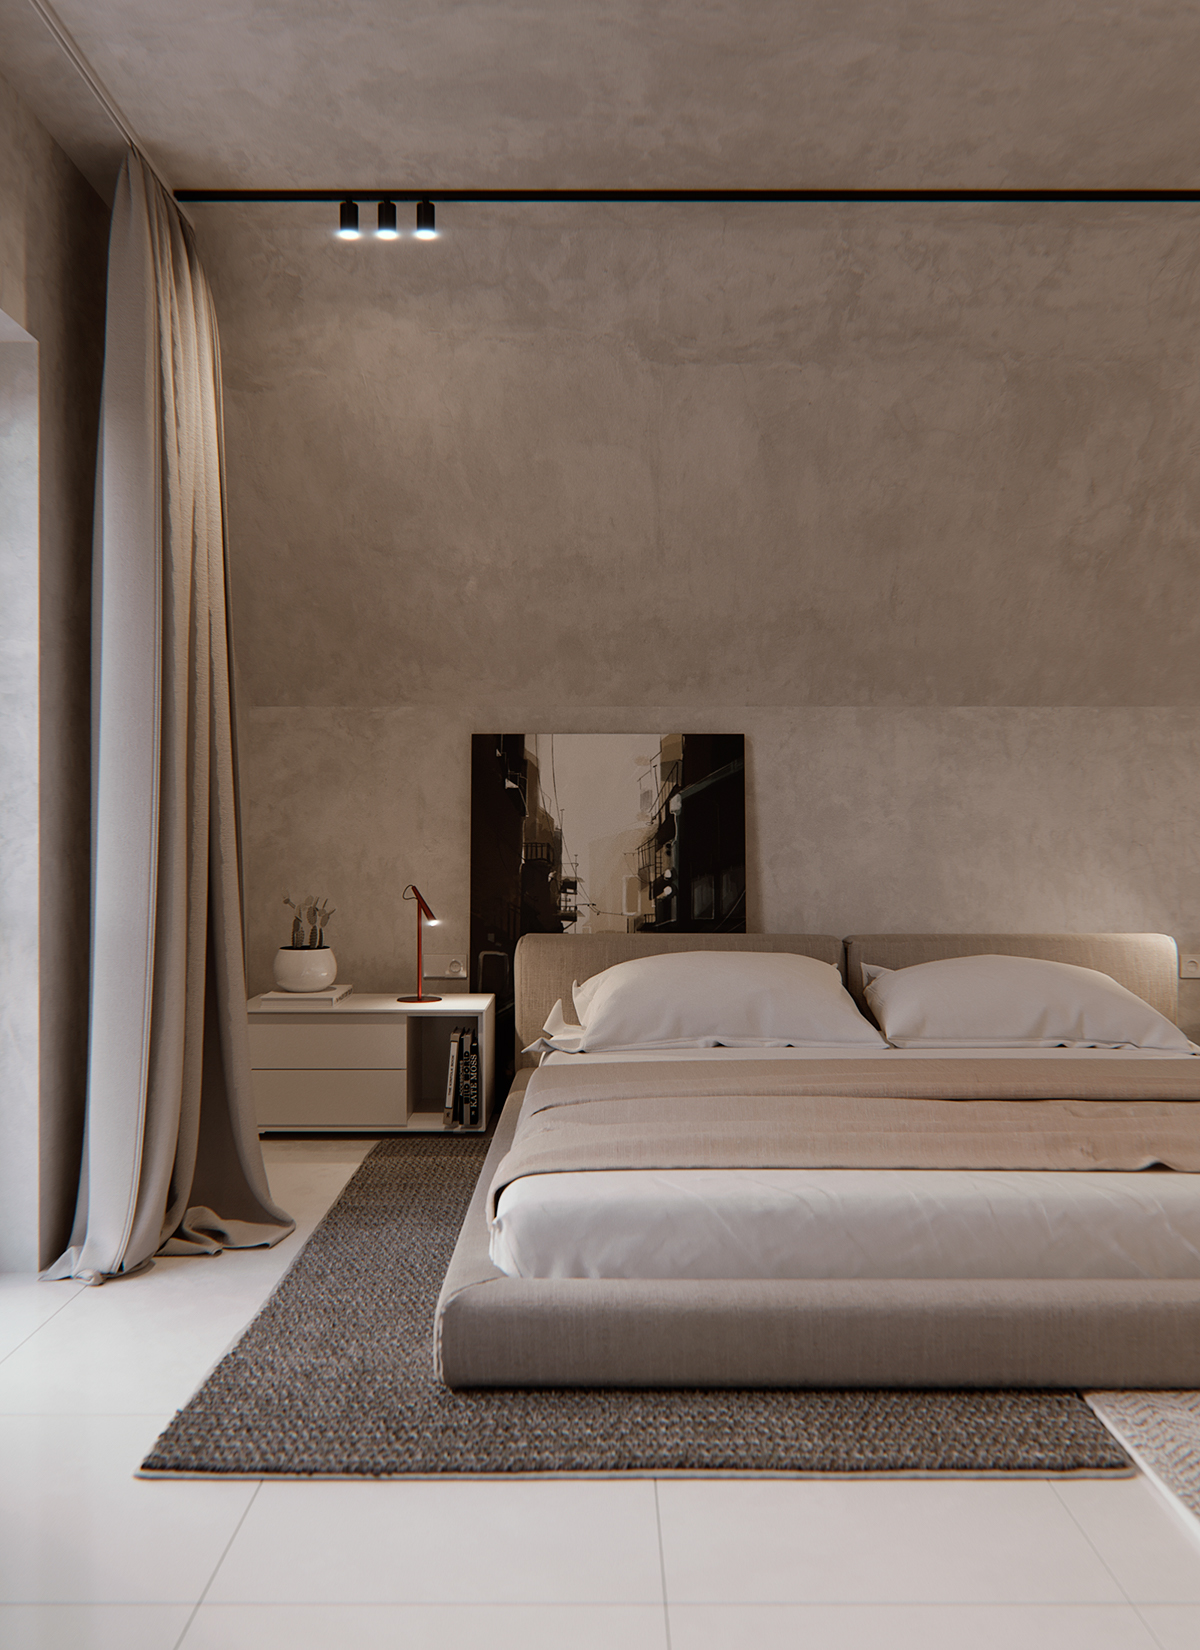 Interior desig interiordesign architecture furniture product inspiration Love bedroom